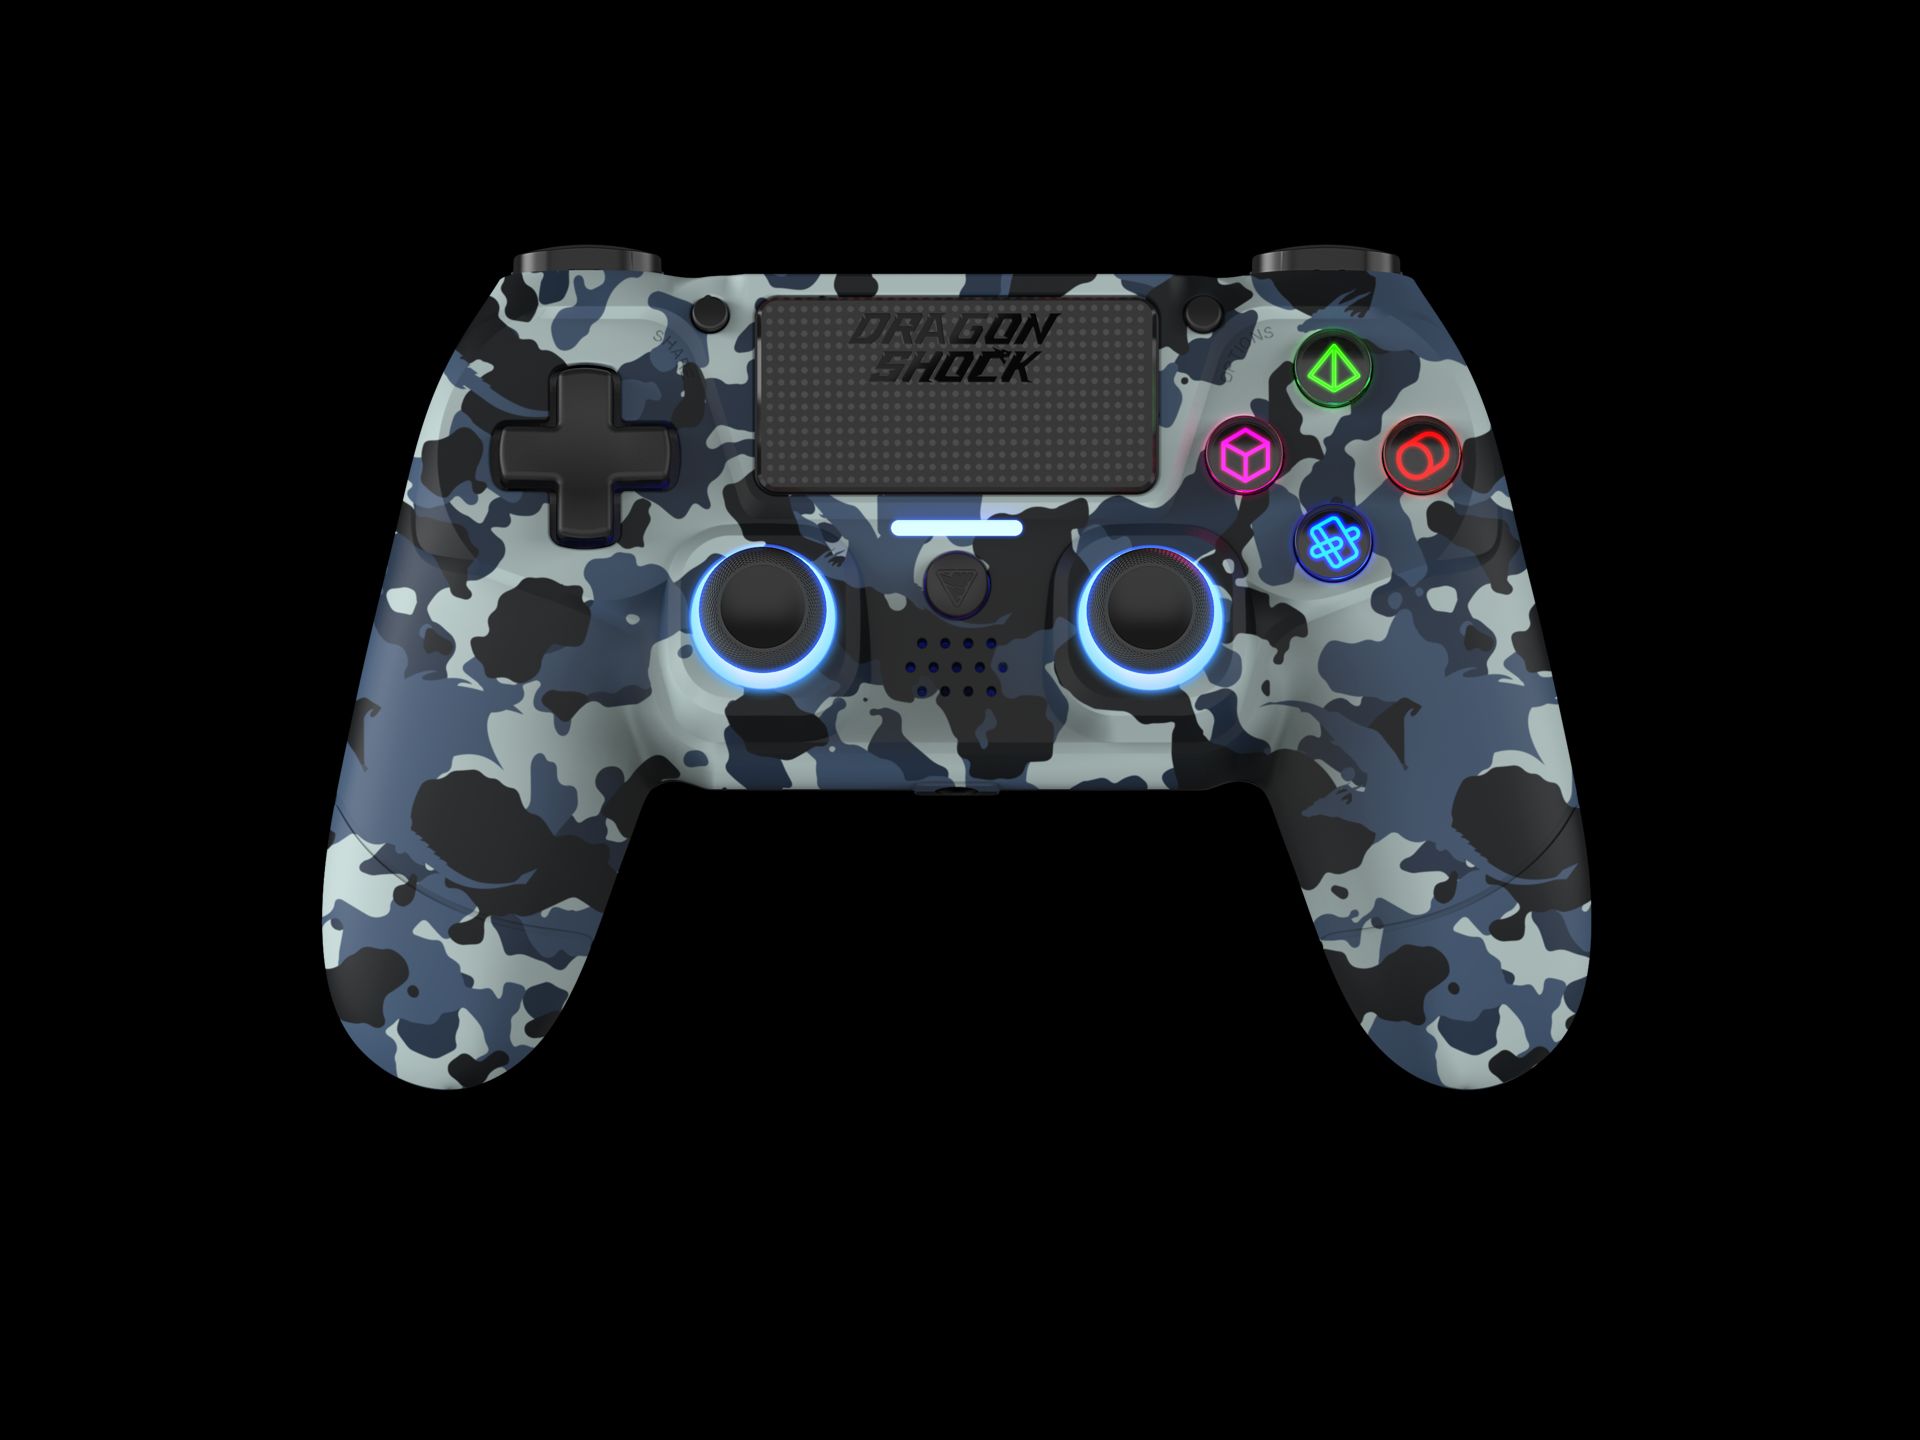 Acheter Manette sans prix fil 4 Bleu Playstation MIZAR et Camouflage pour neuf PS4, Bluetooth pas promo et occasion PC - cher